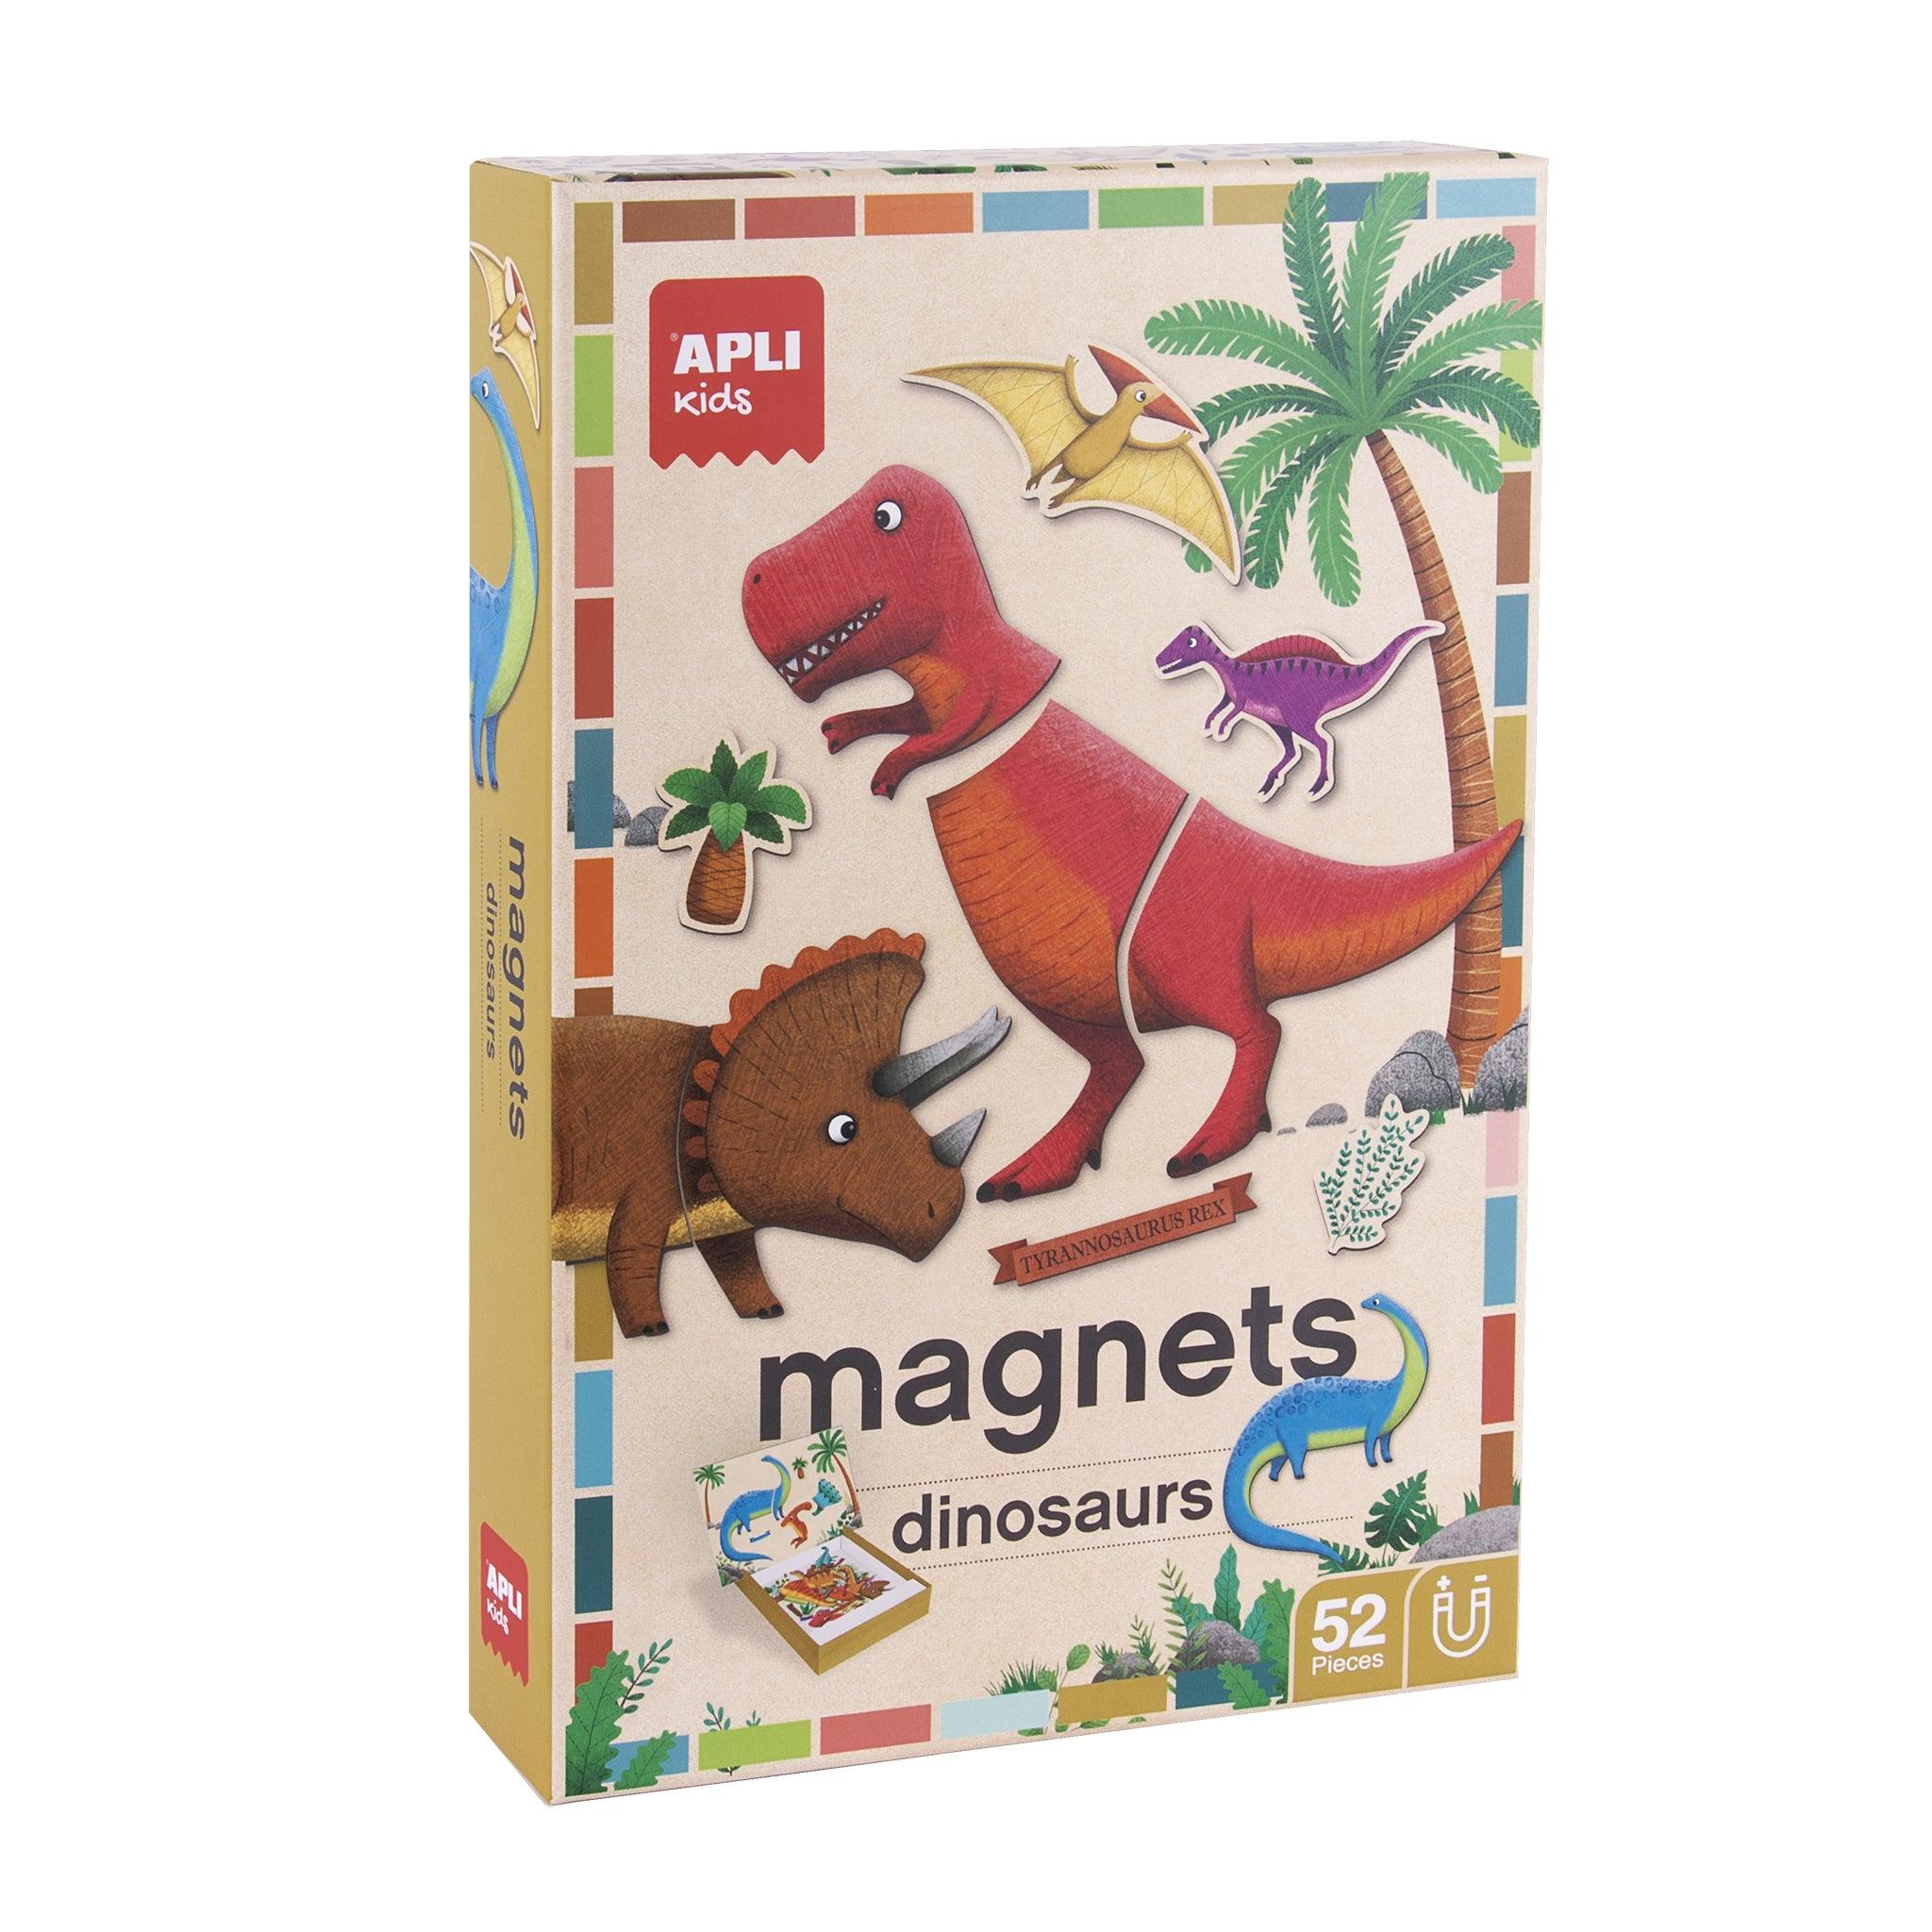 APLI KIDS: Puzzle de dinosaure magnétique